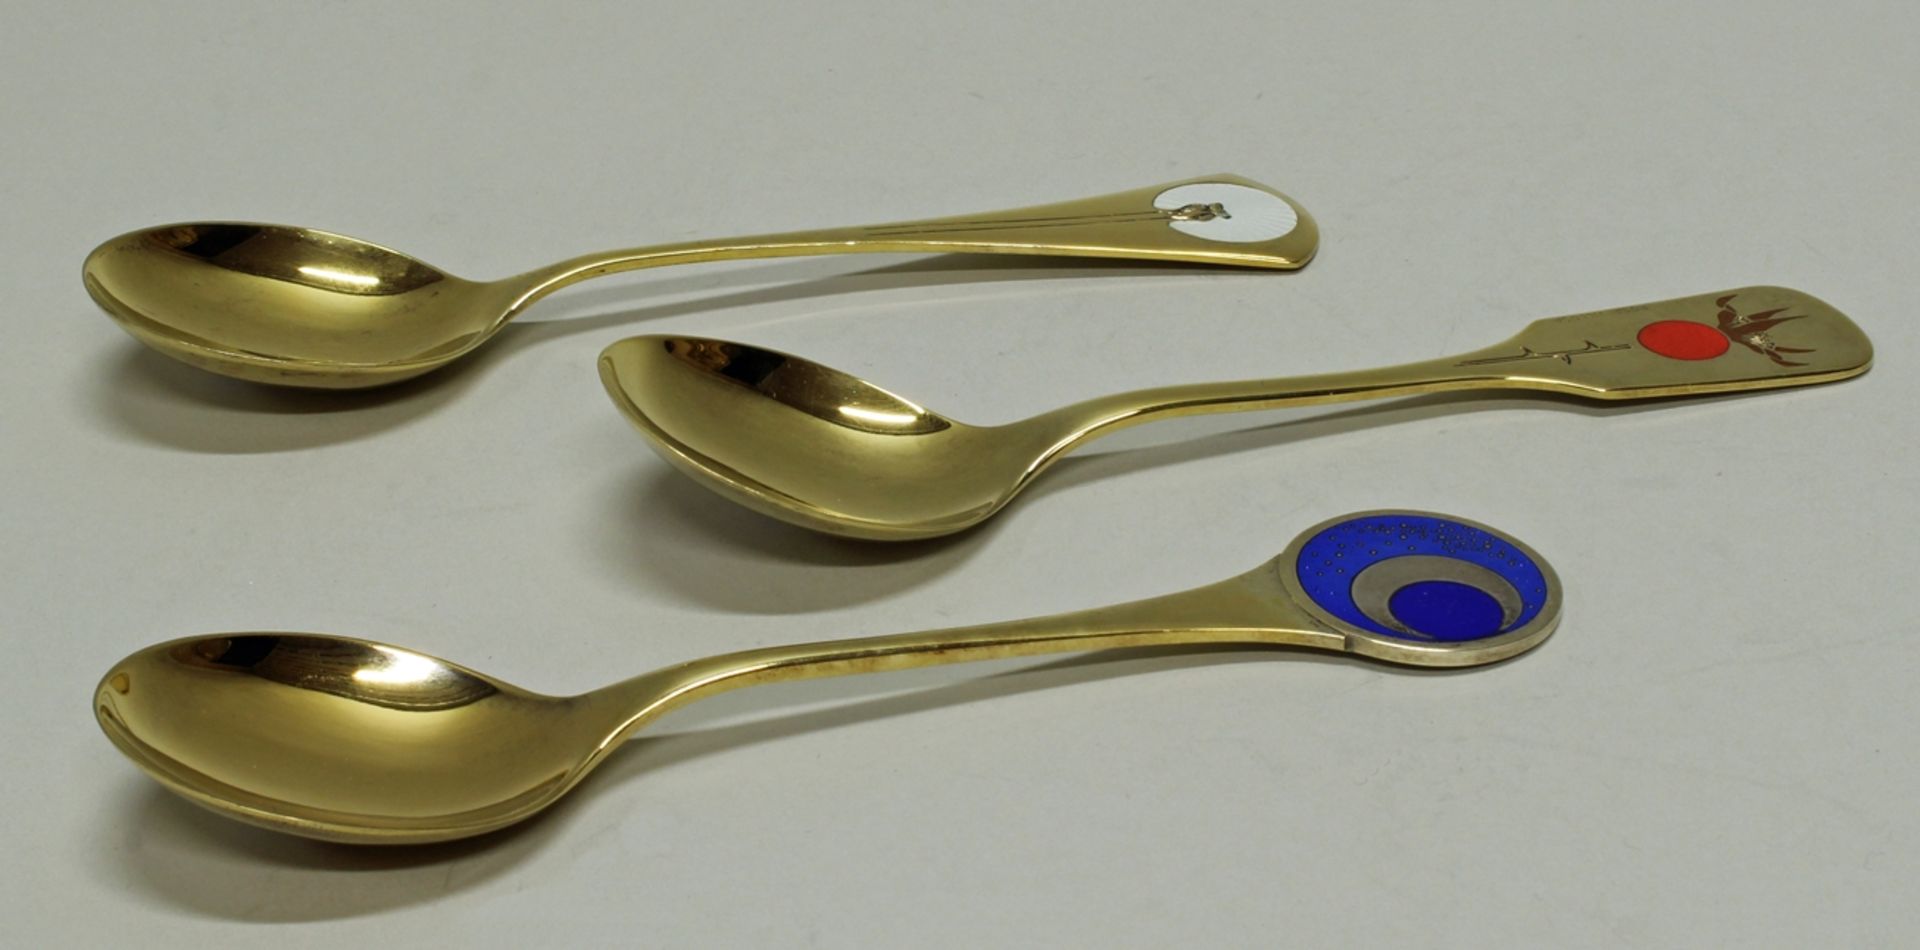 3 Jahreslöffel, Silber 925, Robbe & Berking, 1972, 1977, 1979, vergoldet, emailliert, ca. 17.2 cm h